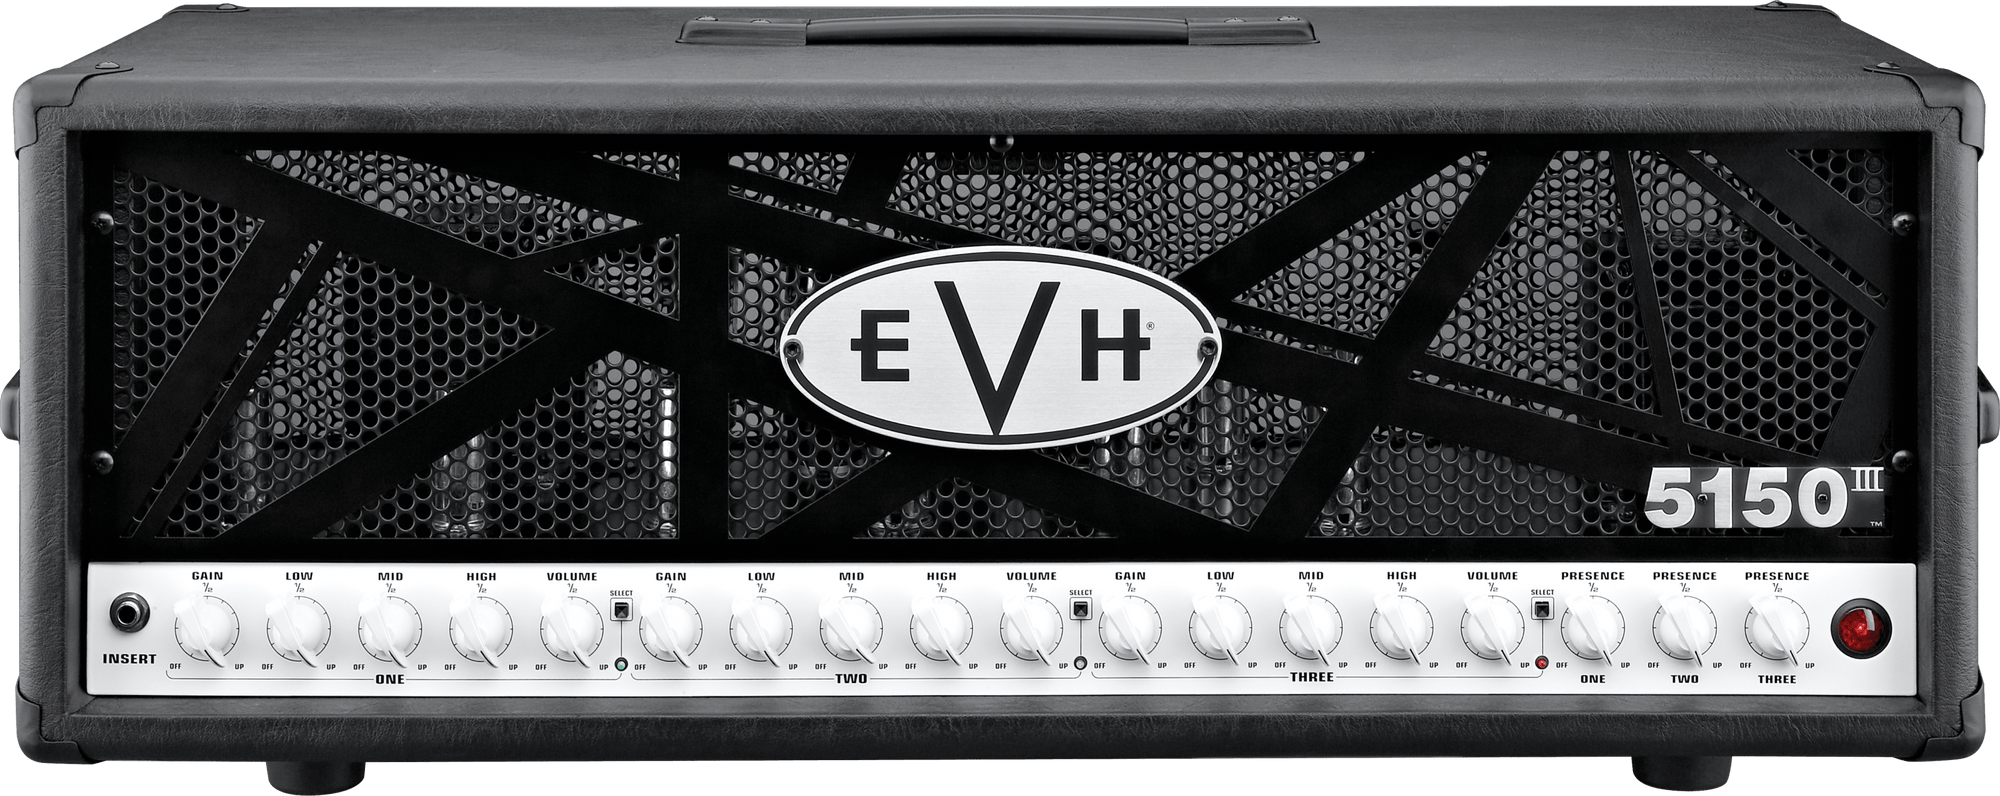 EVH 5150 III HD Head